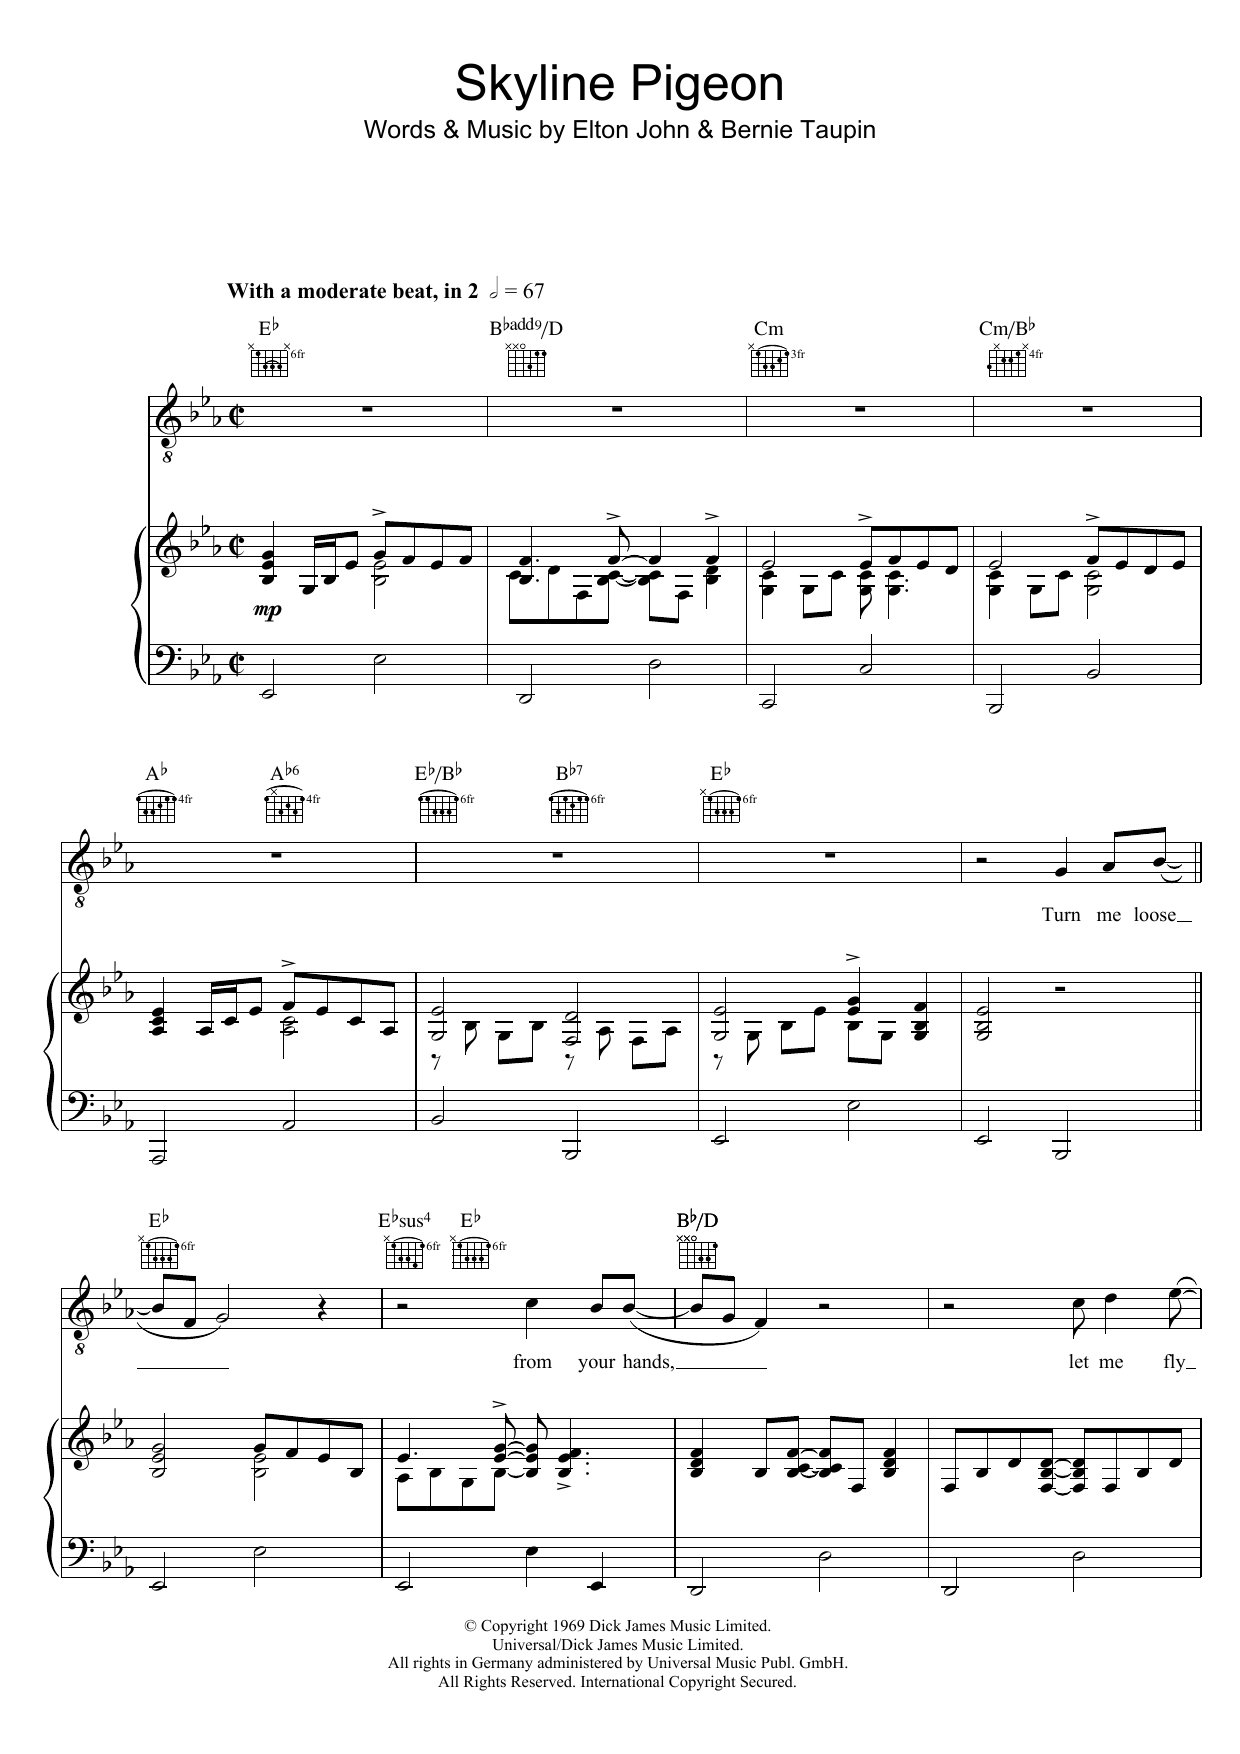 Elton John Skyline Pigeon Sheet Music Notes & Chords for Keyboard - Download or Print PDF